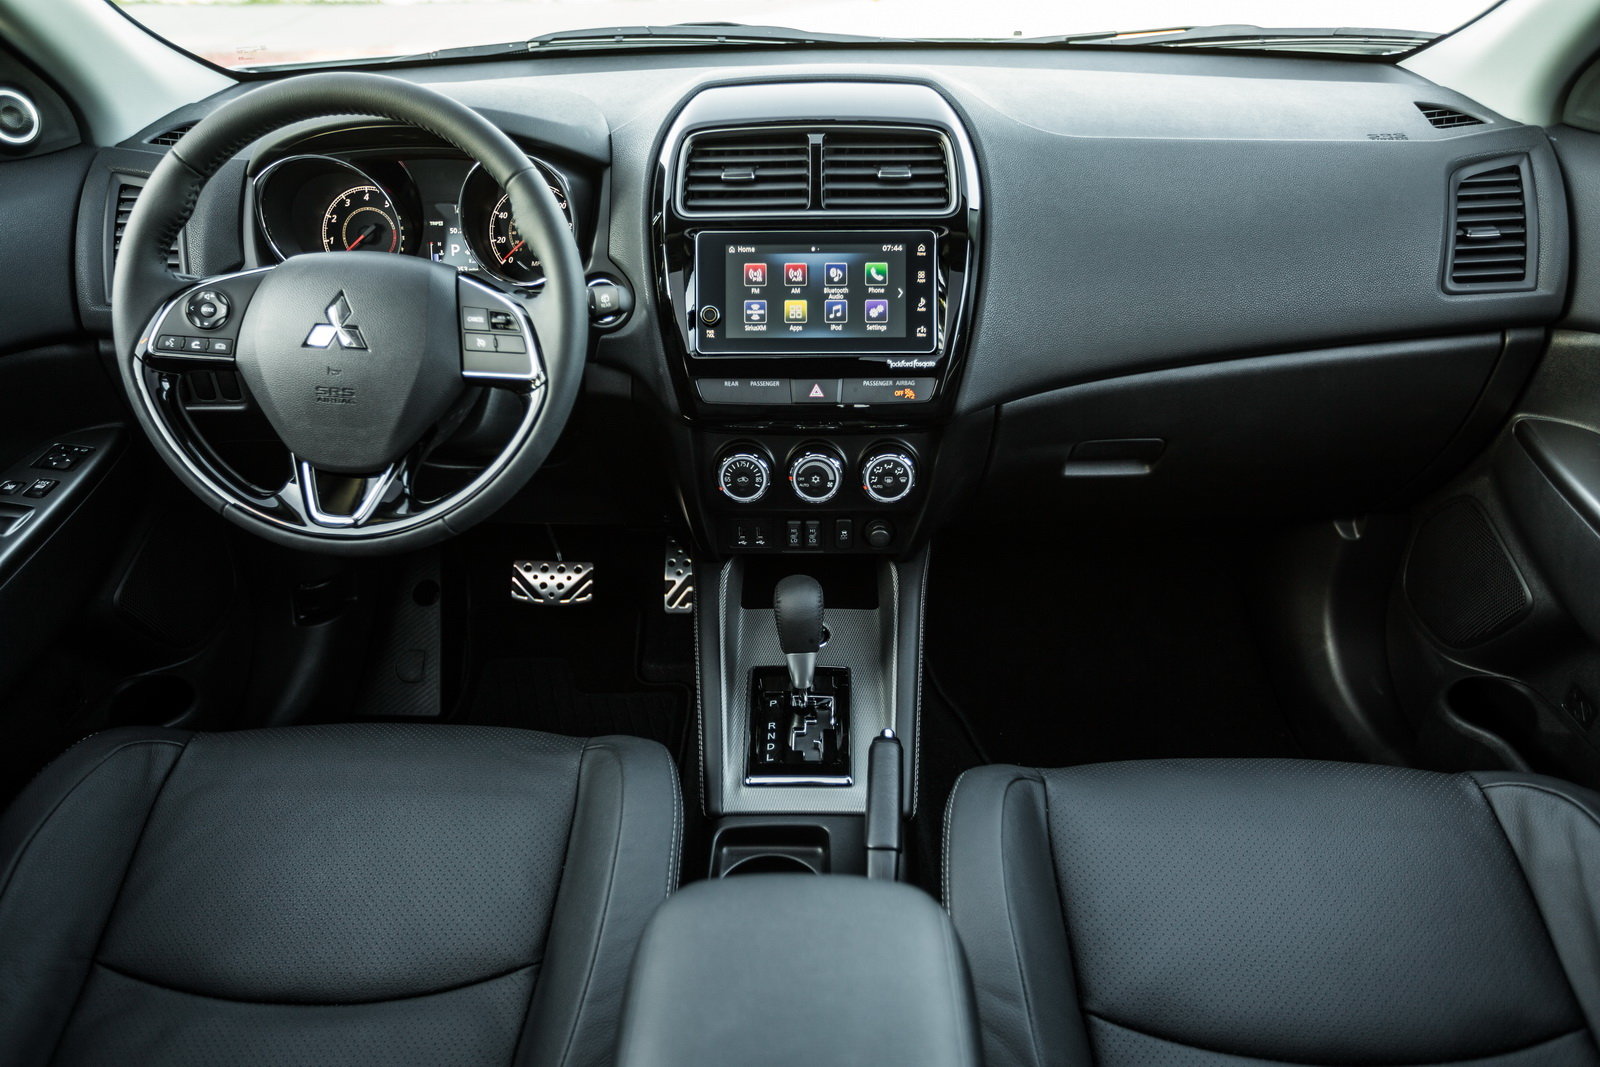 Mitsubishi překvapilo faceliftem malého ASX na autosalonu v New Yorku, moderní prvky konkurence ale postrádá i nadále